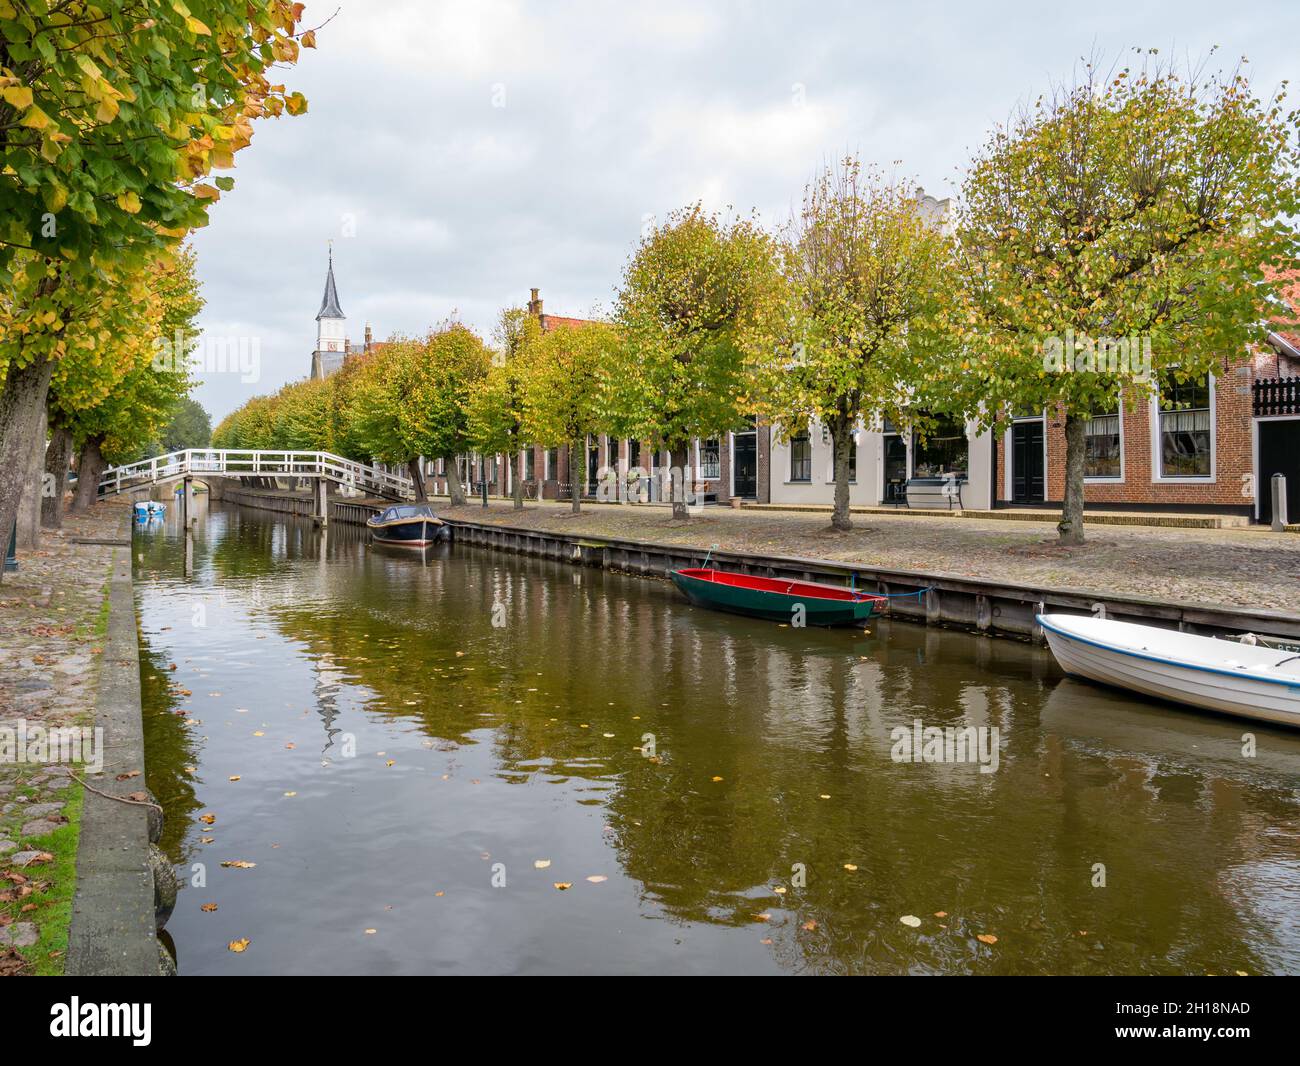 Puente peatonal sobre el canal y casas en Heerenwal muelle en la ciudad de Sloten, Sleat, Friesland, Países Bajos Foto de stock